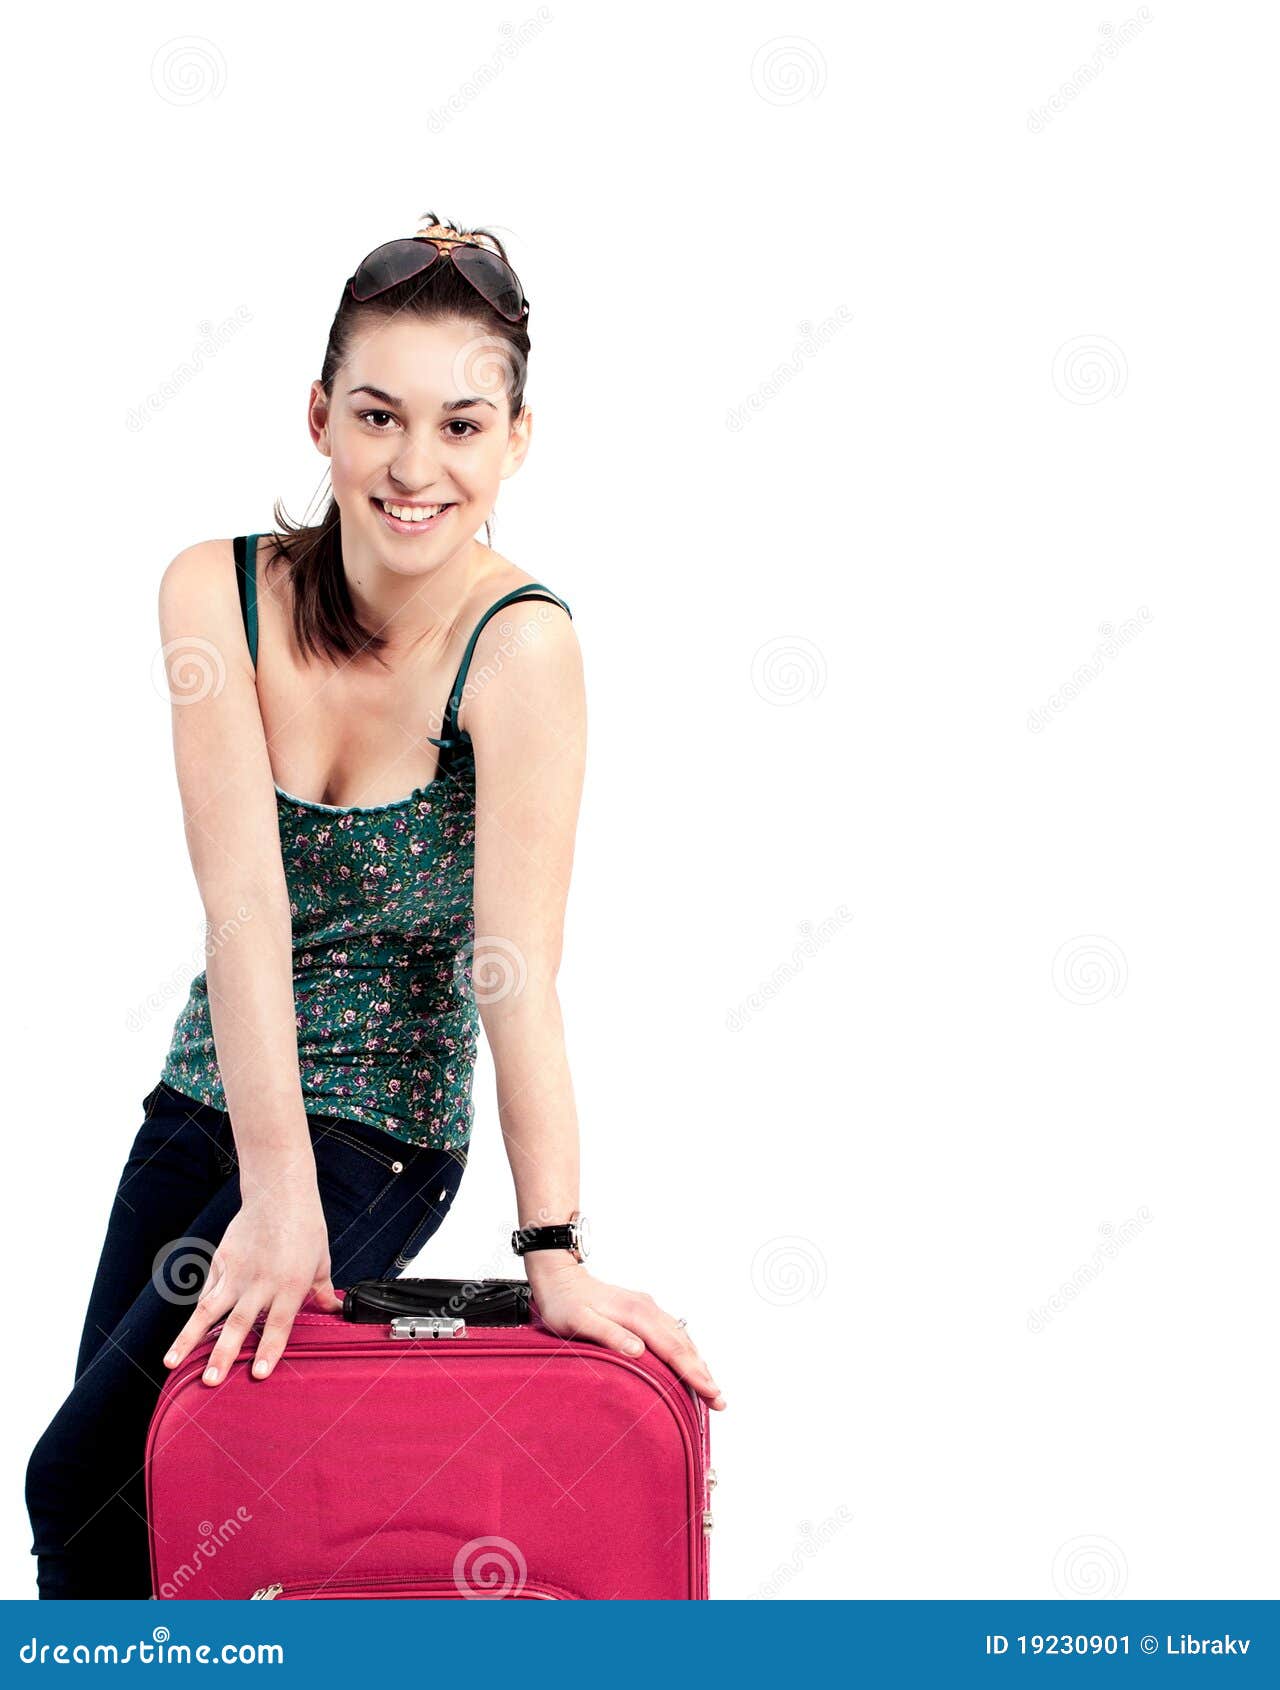 travel bag in girl